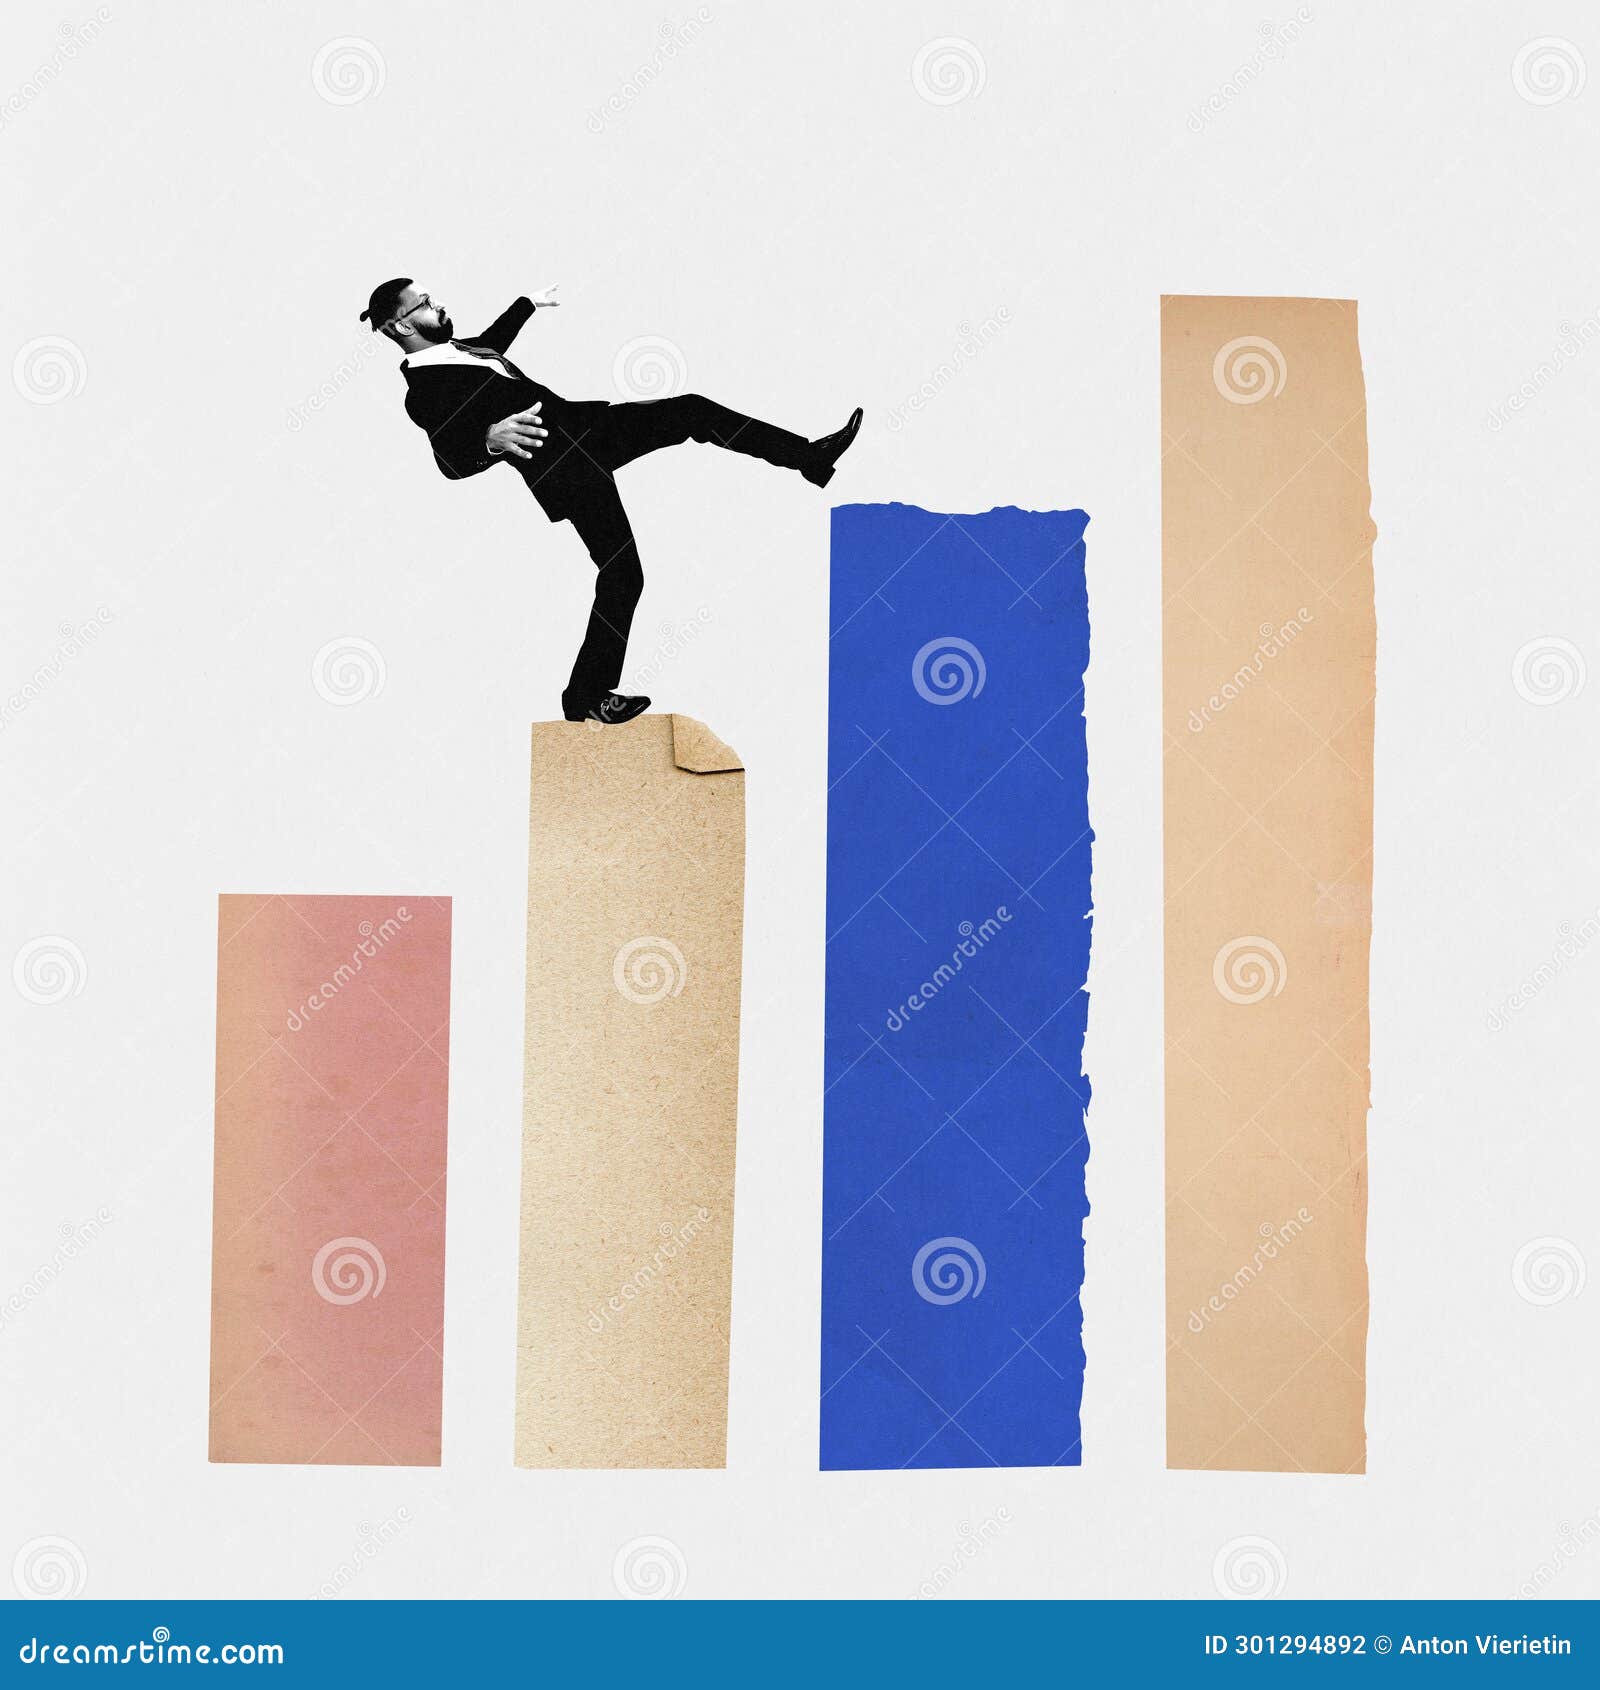 239 Balancing Ladder Man Stock Photos - Free & Royalty-Free Stock